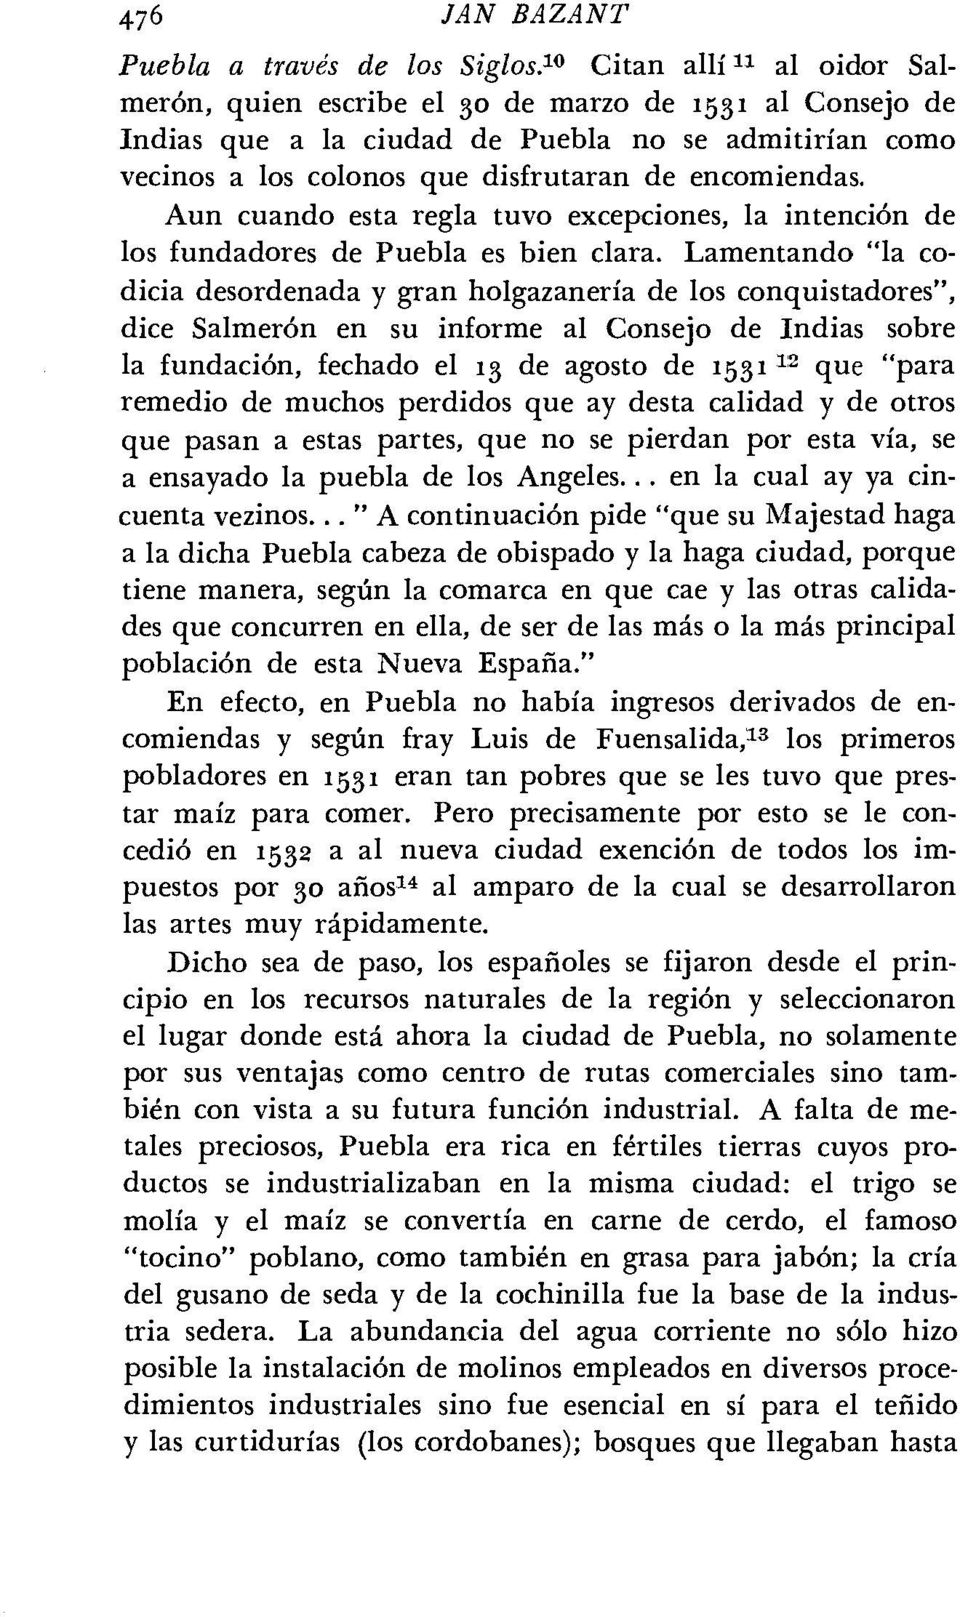 Aun cuando esta regla tuvo excepciones, la intención de los fundadores de Puebla es bien clara.